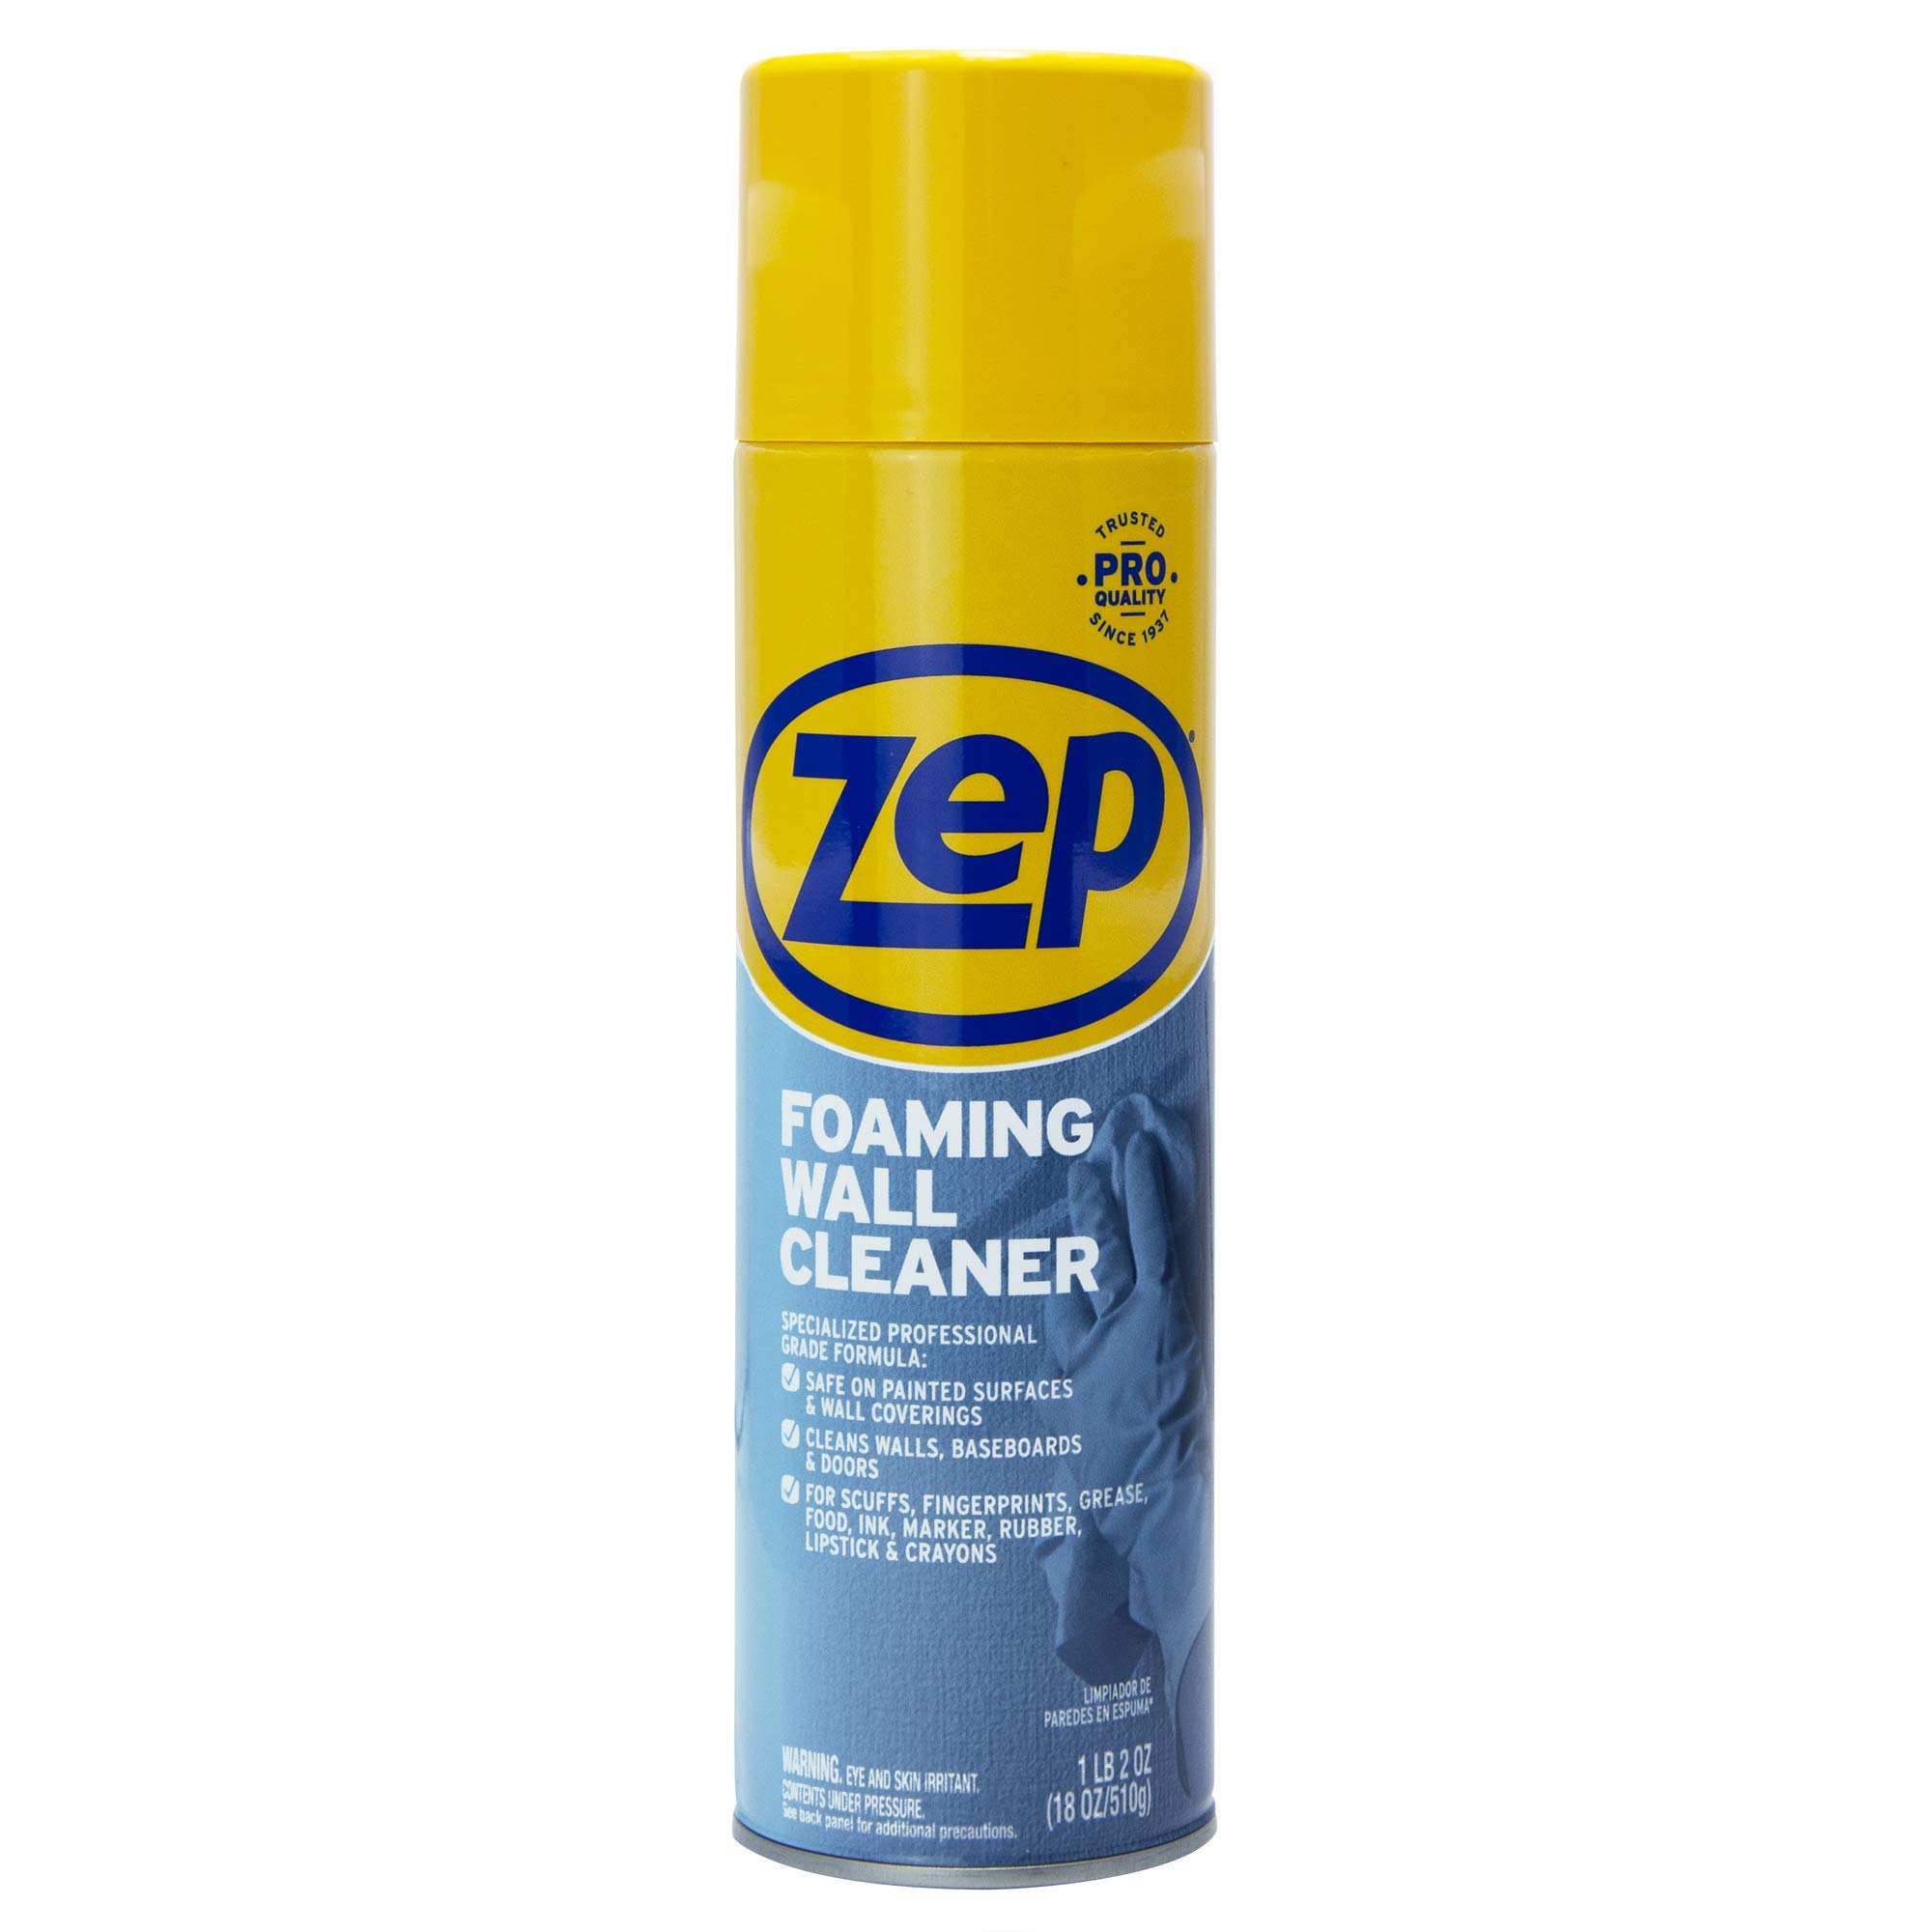 Zep Foaming Wall & Baseboard Cleaner $5.48